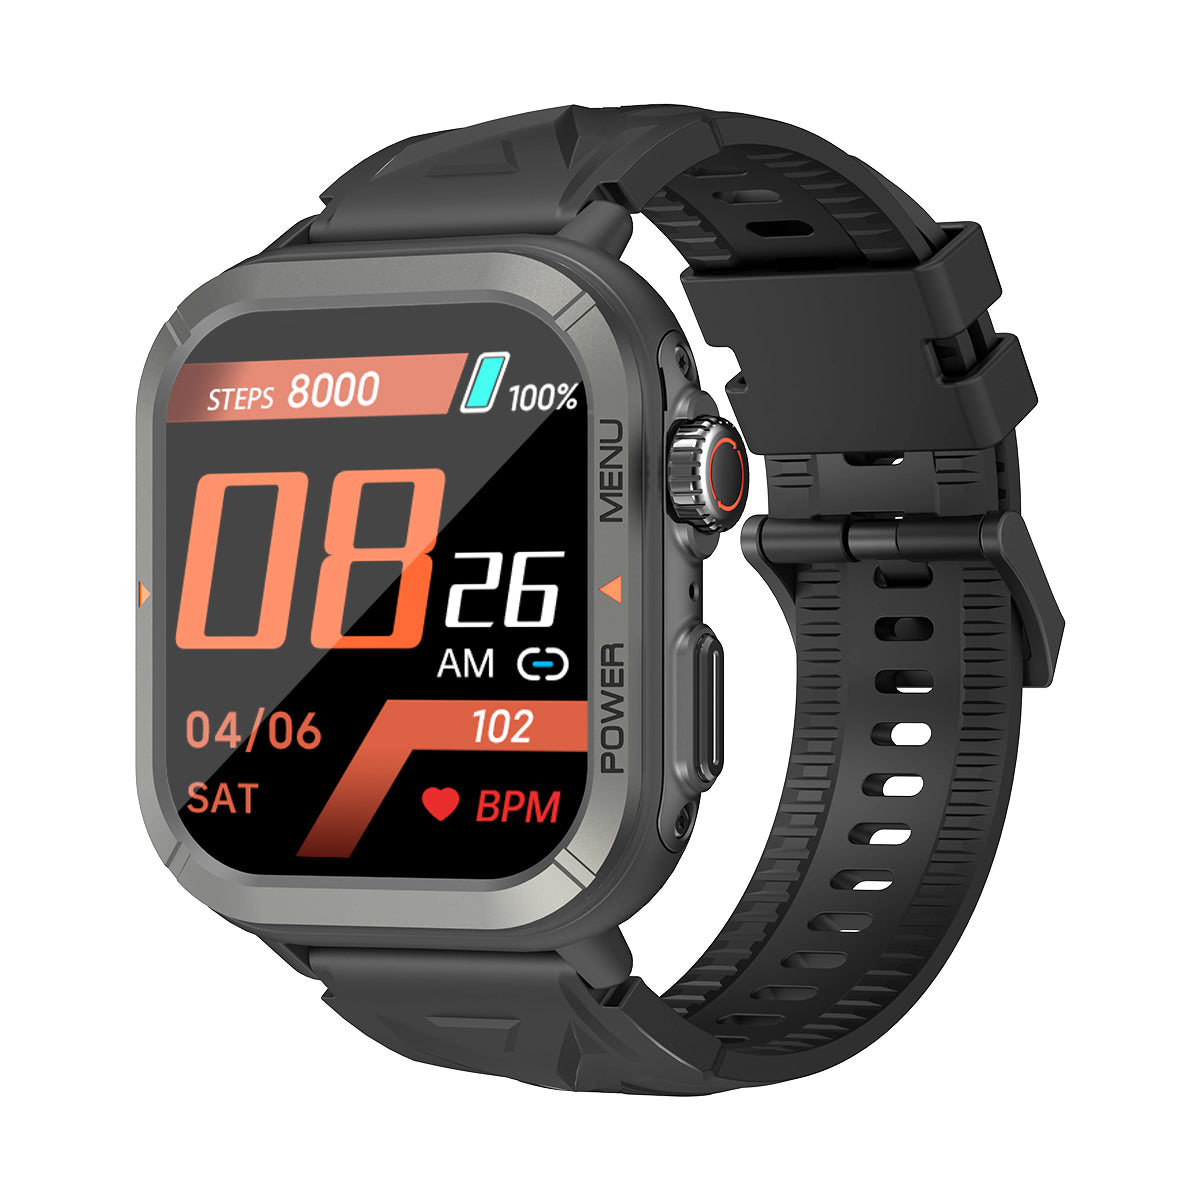 Blackview W30 10-meter Water-resistance Cool Smartwatch